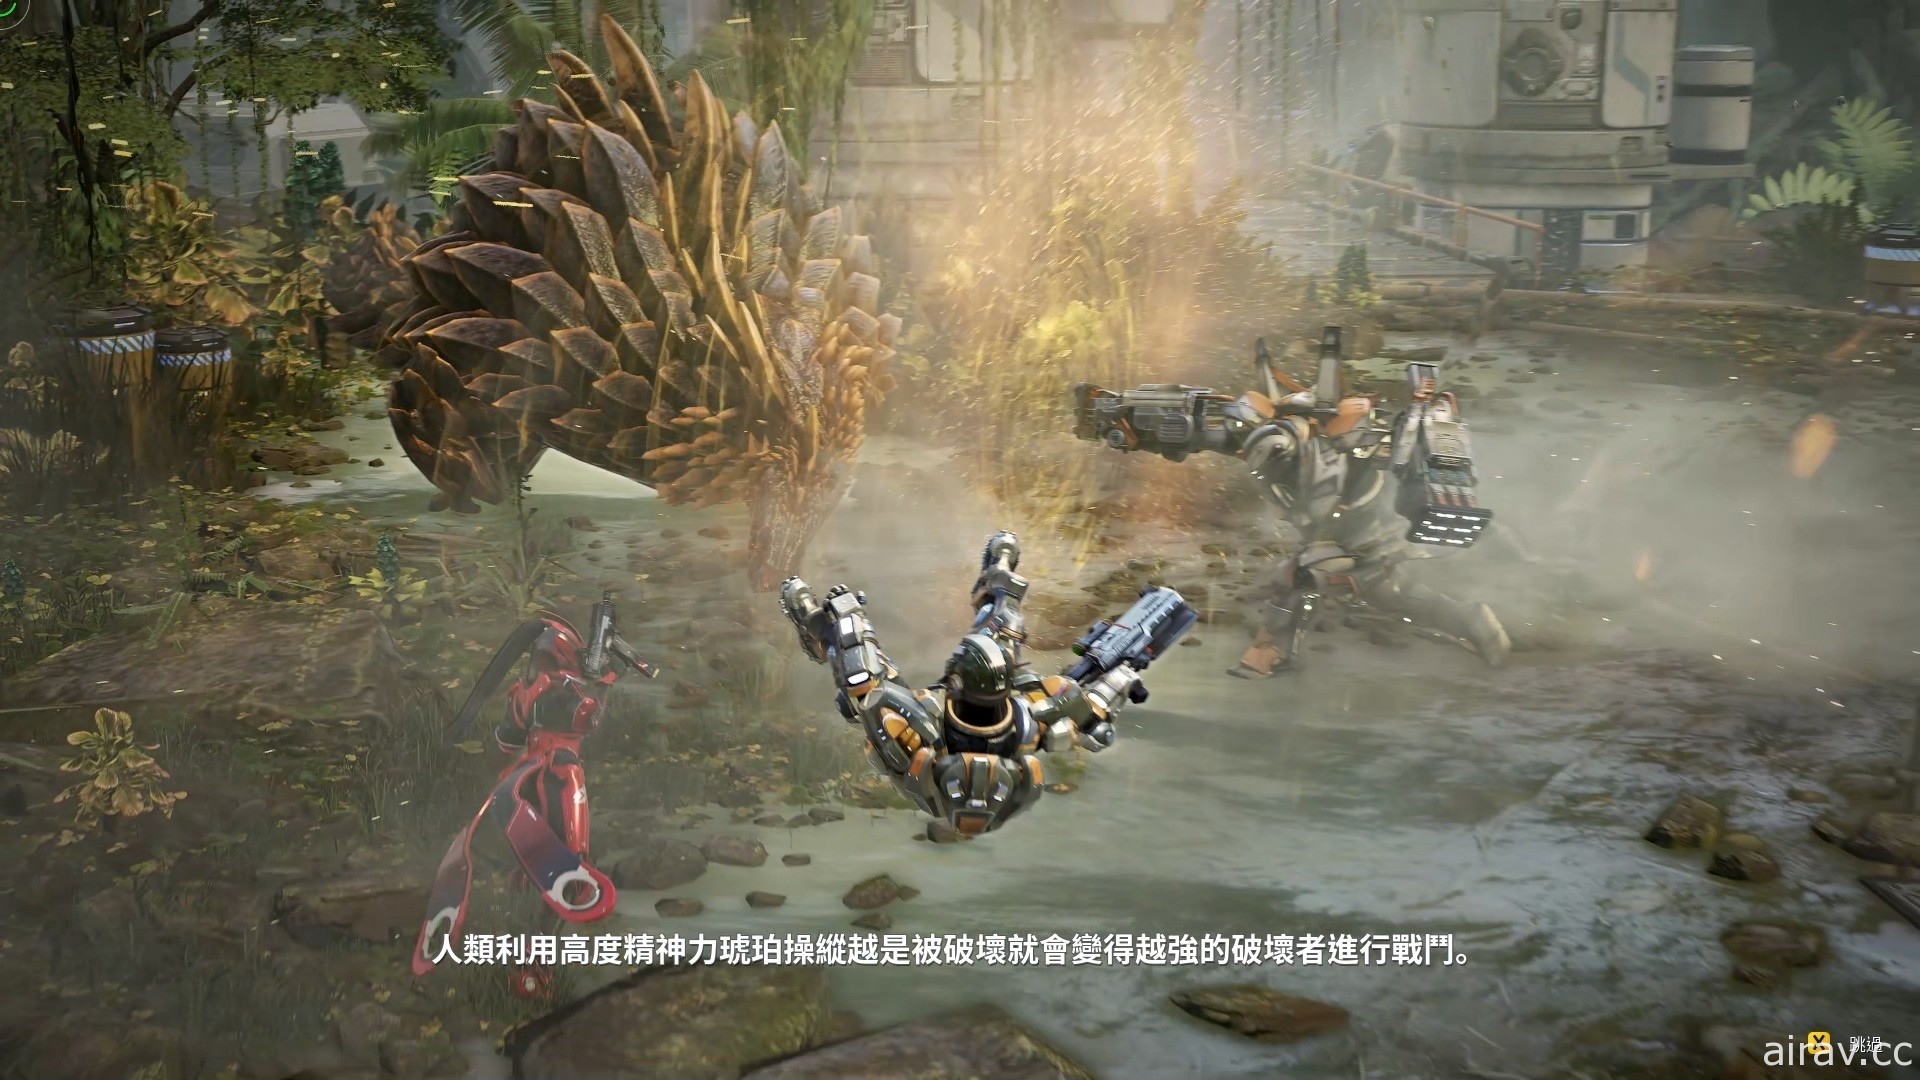 【試玩】快節奏科幻動作遊戲《ANVIL》帶來 Roguelike 俯視角射擊新體驗